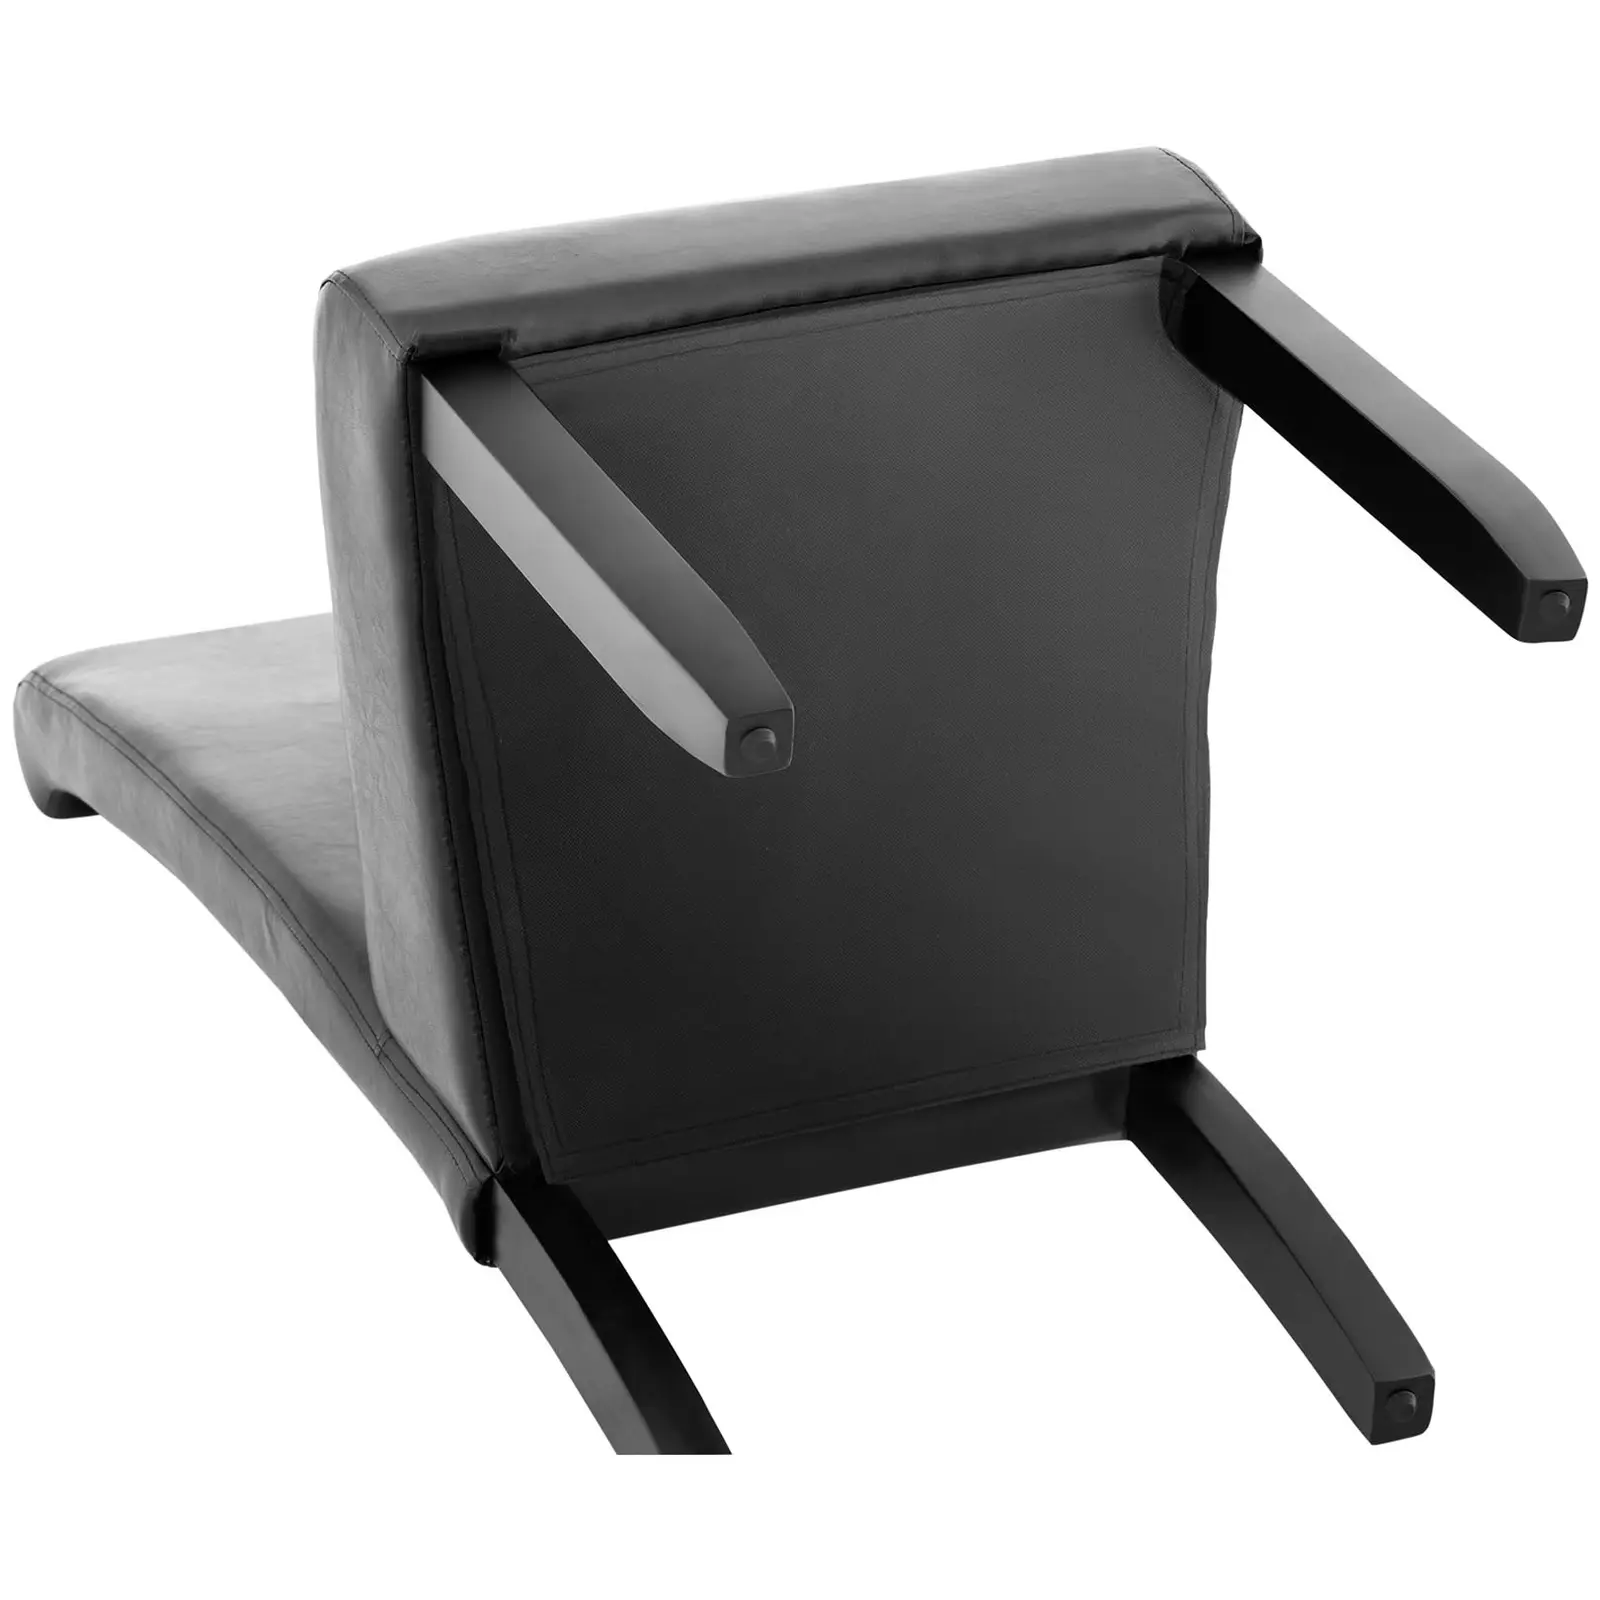 Kárpitozott szék - 2 darabos készlet - 180-ig kg - ülőfelület 44,5 x 44 cm - fekete